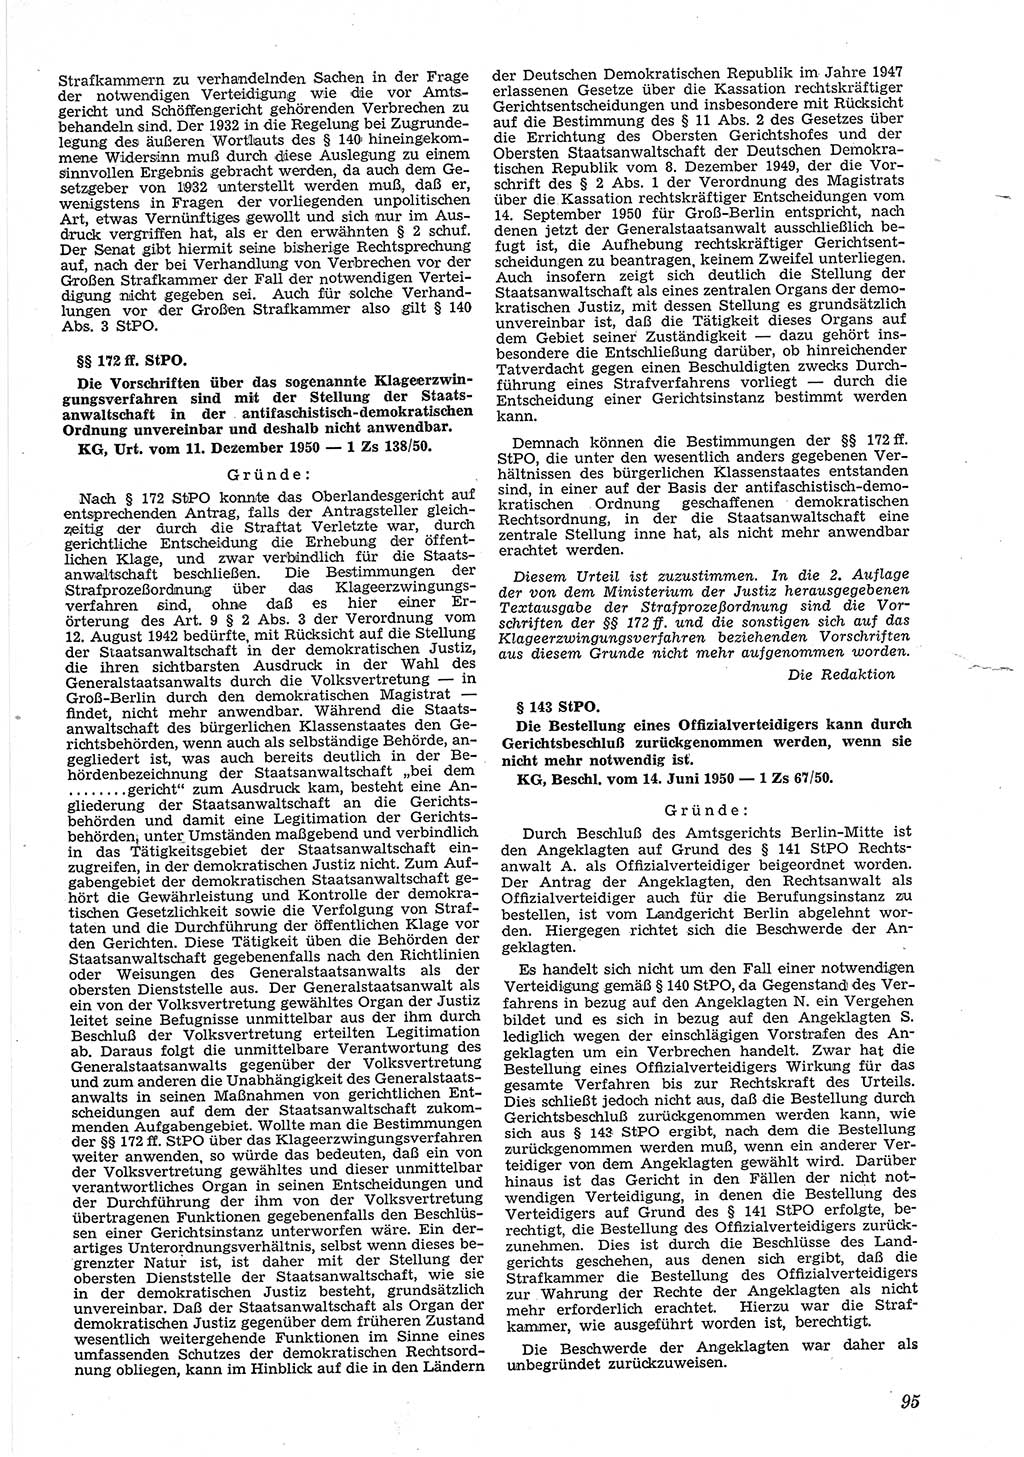 Neue Justiz (NJ), Zeitschrift für Recht und Rechtswissenschaft [Deutsche Demokratische Republik (DDR)], 5. Jahrgang 1951, Seite 95 (NJ DDR 1951, S. 95)